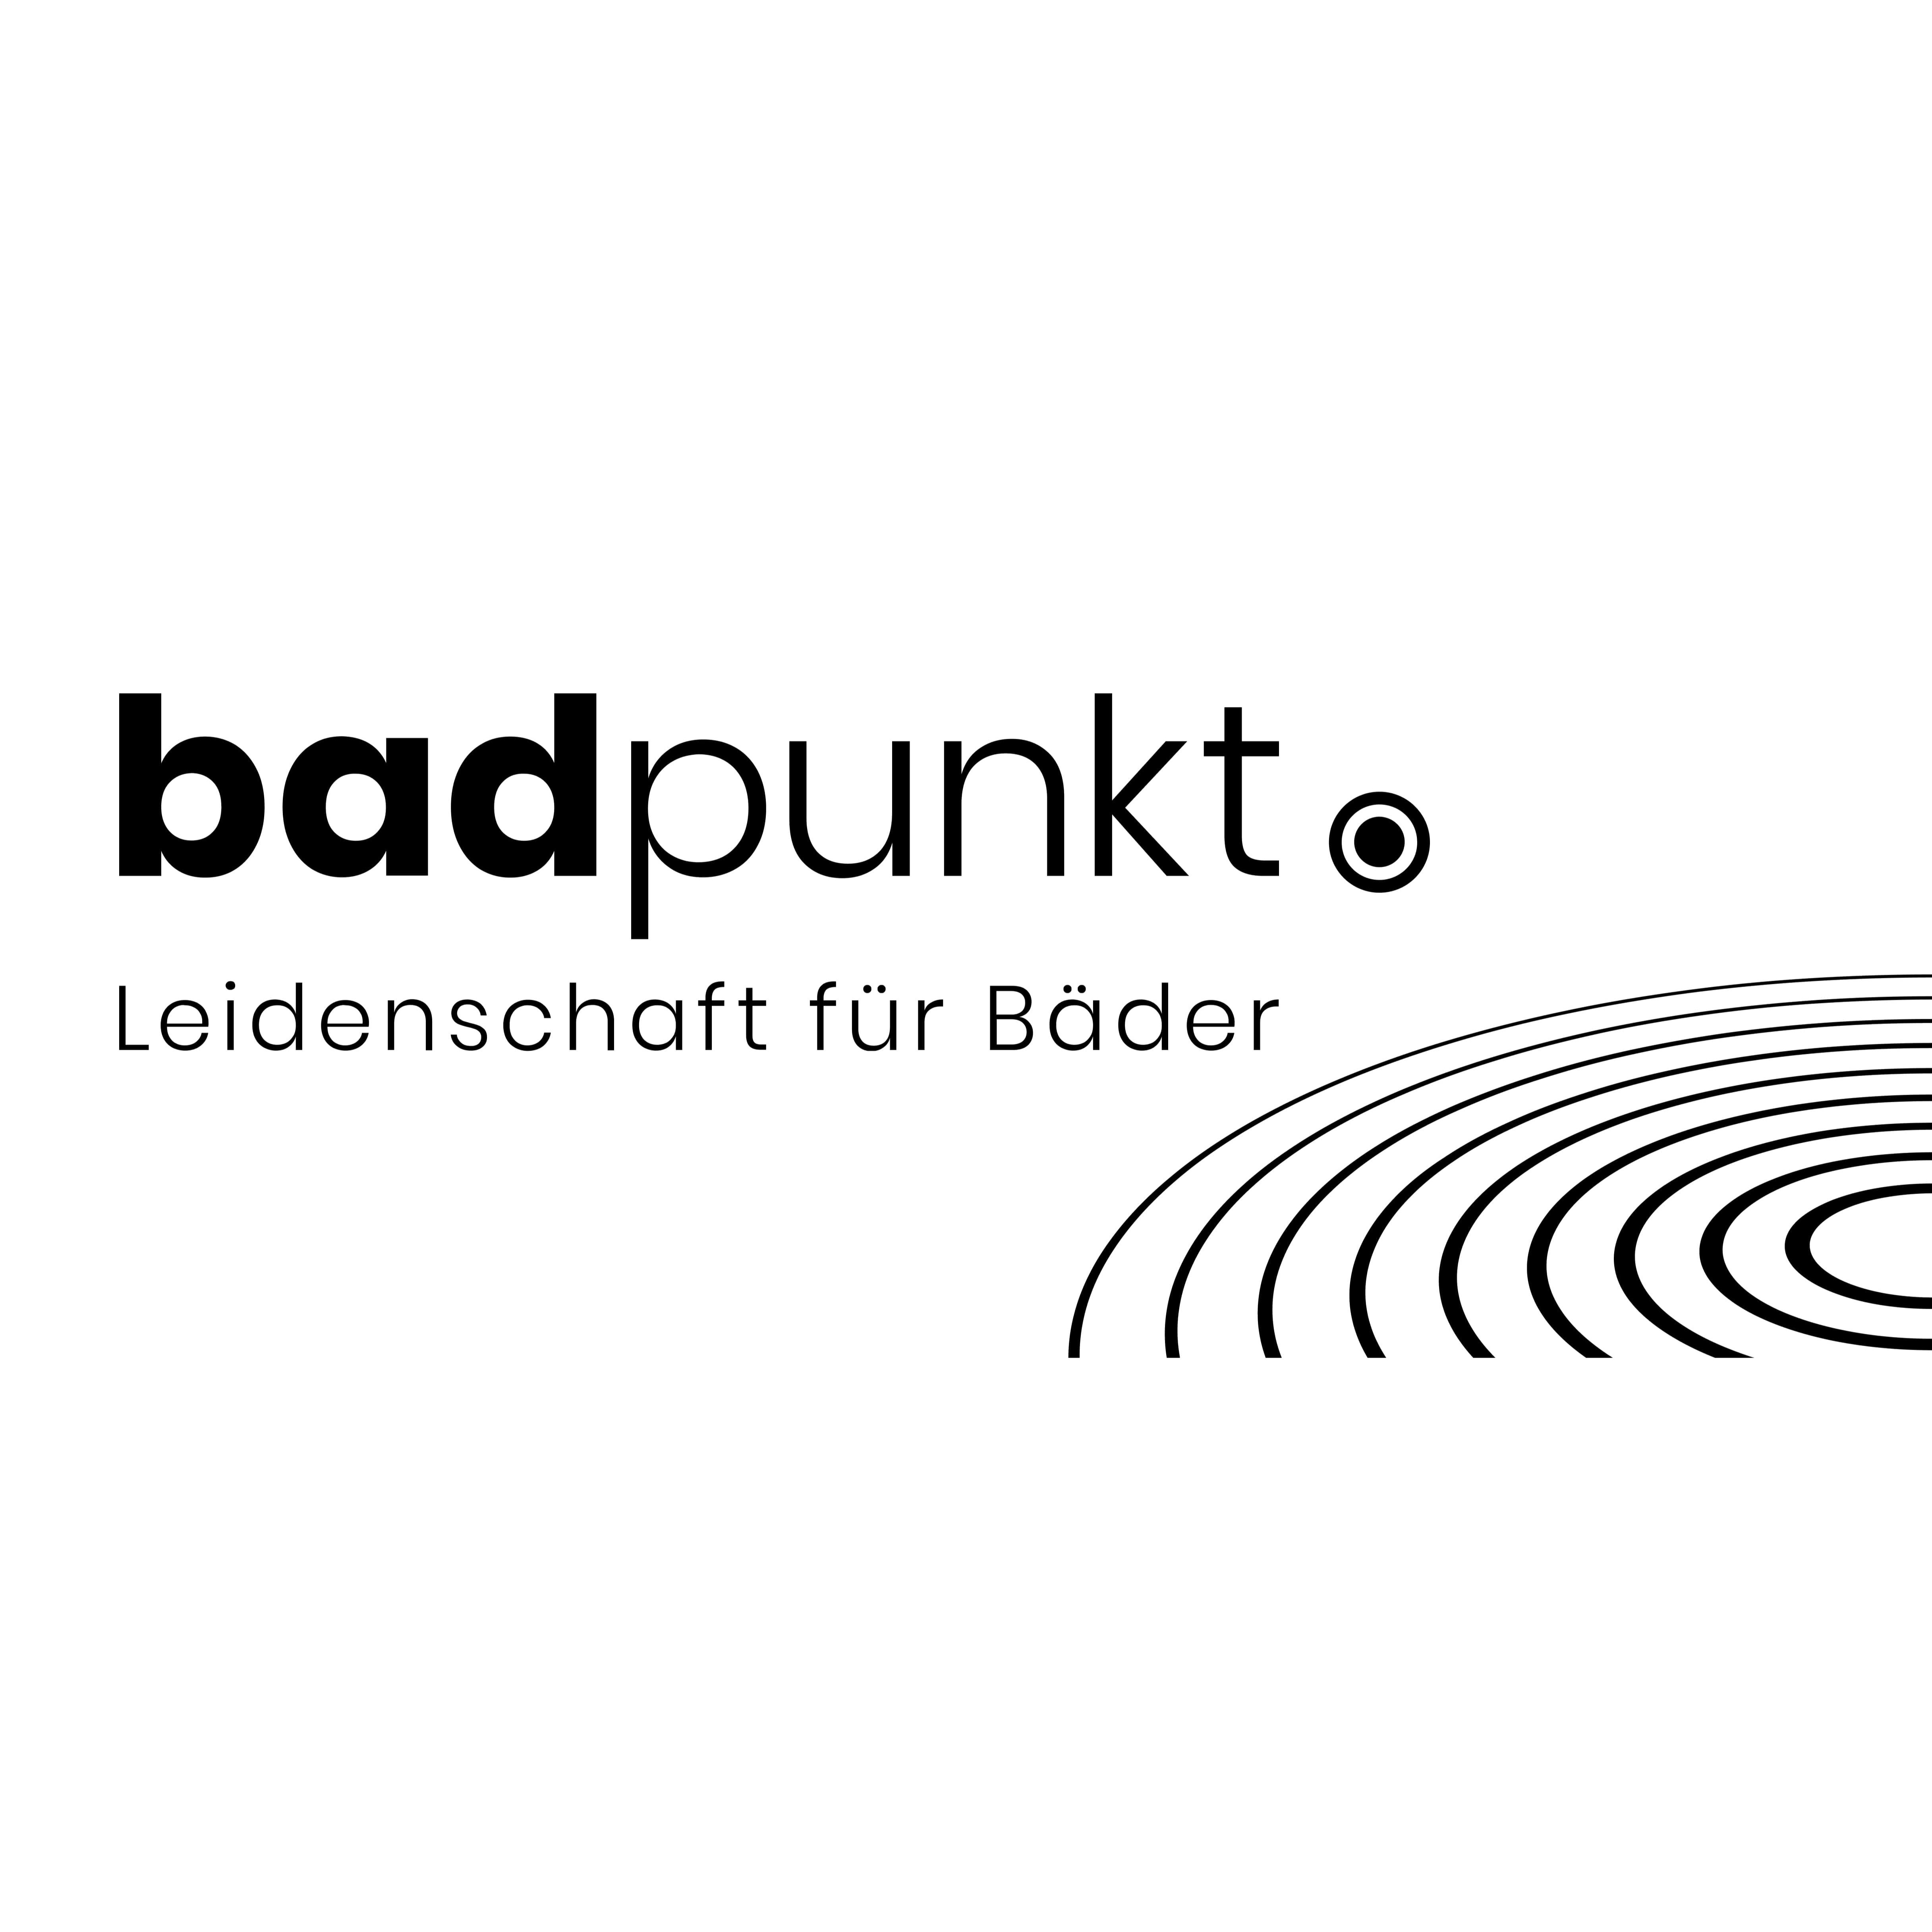 badpunkt Badausstellung Geldern - Elmer in Geldern - Logo